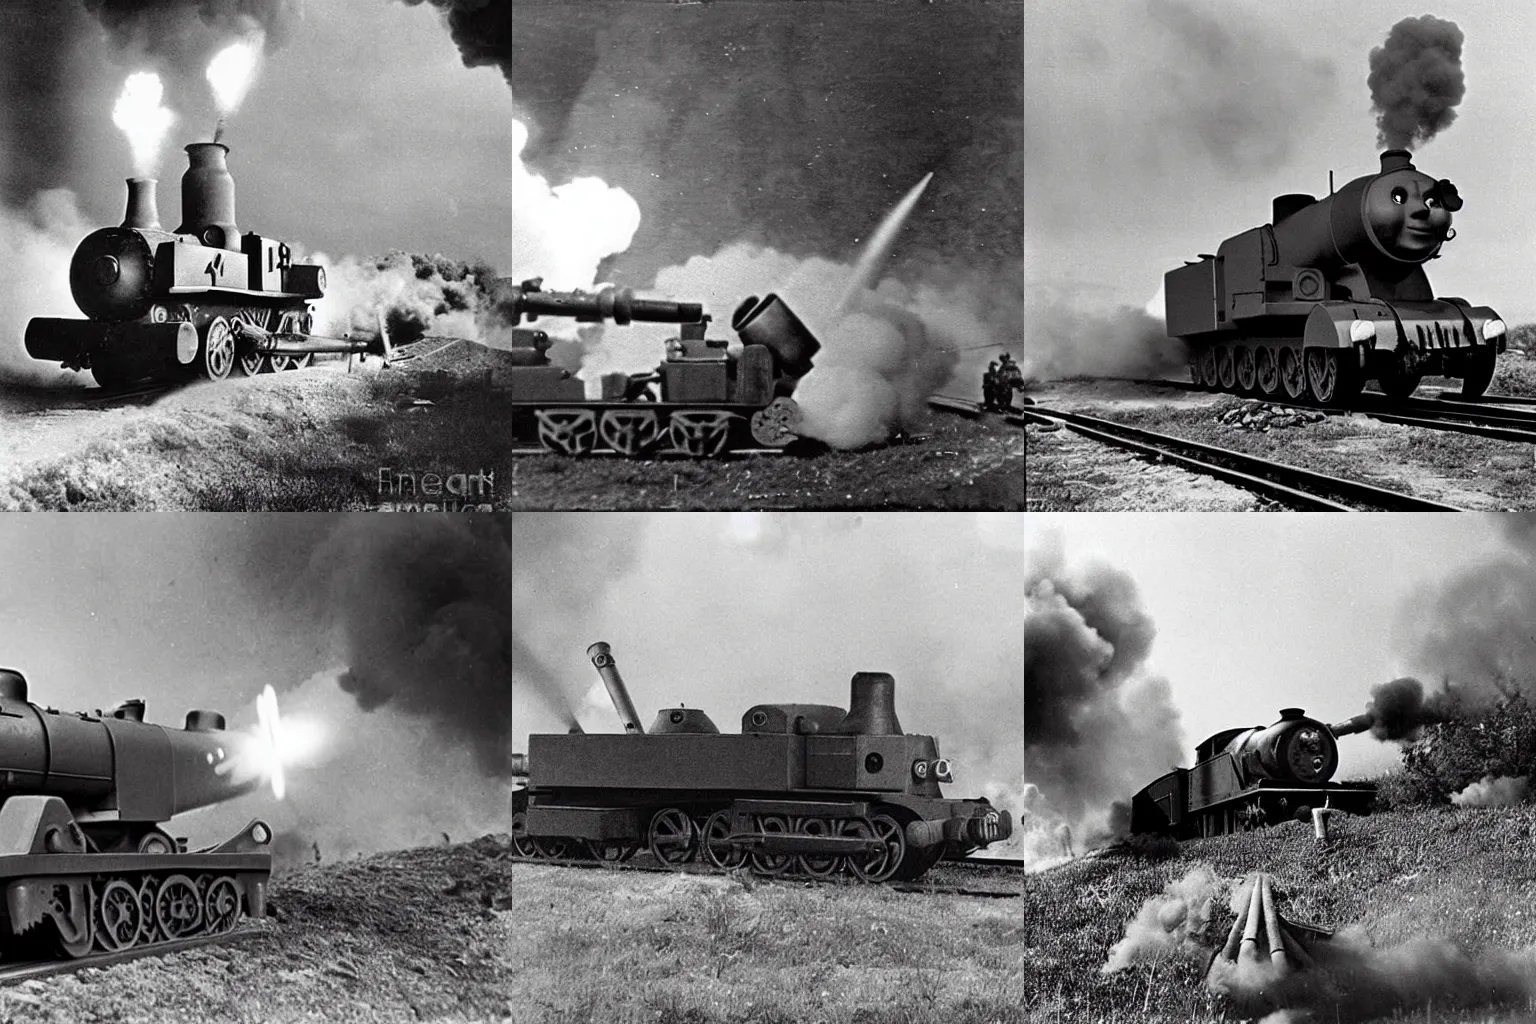 Prompt: WW2 era photograph of Thomas-tank-engine-face on 800mm German artillery Dora firing off a shot